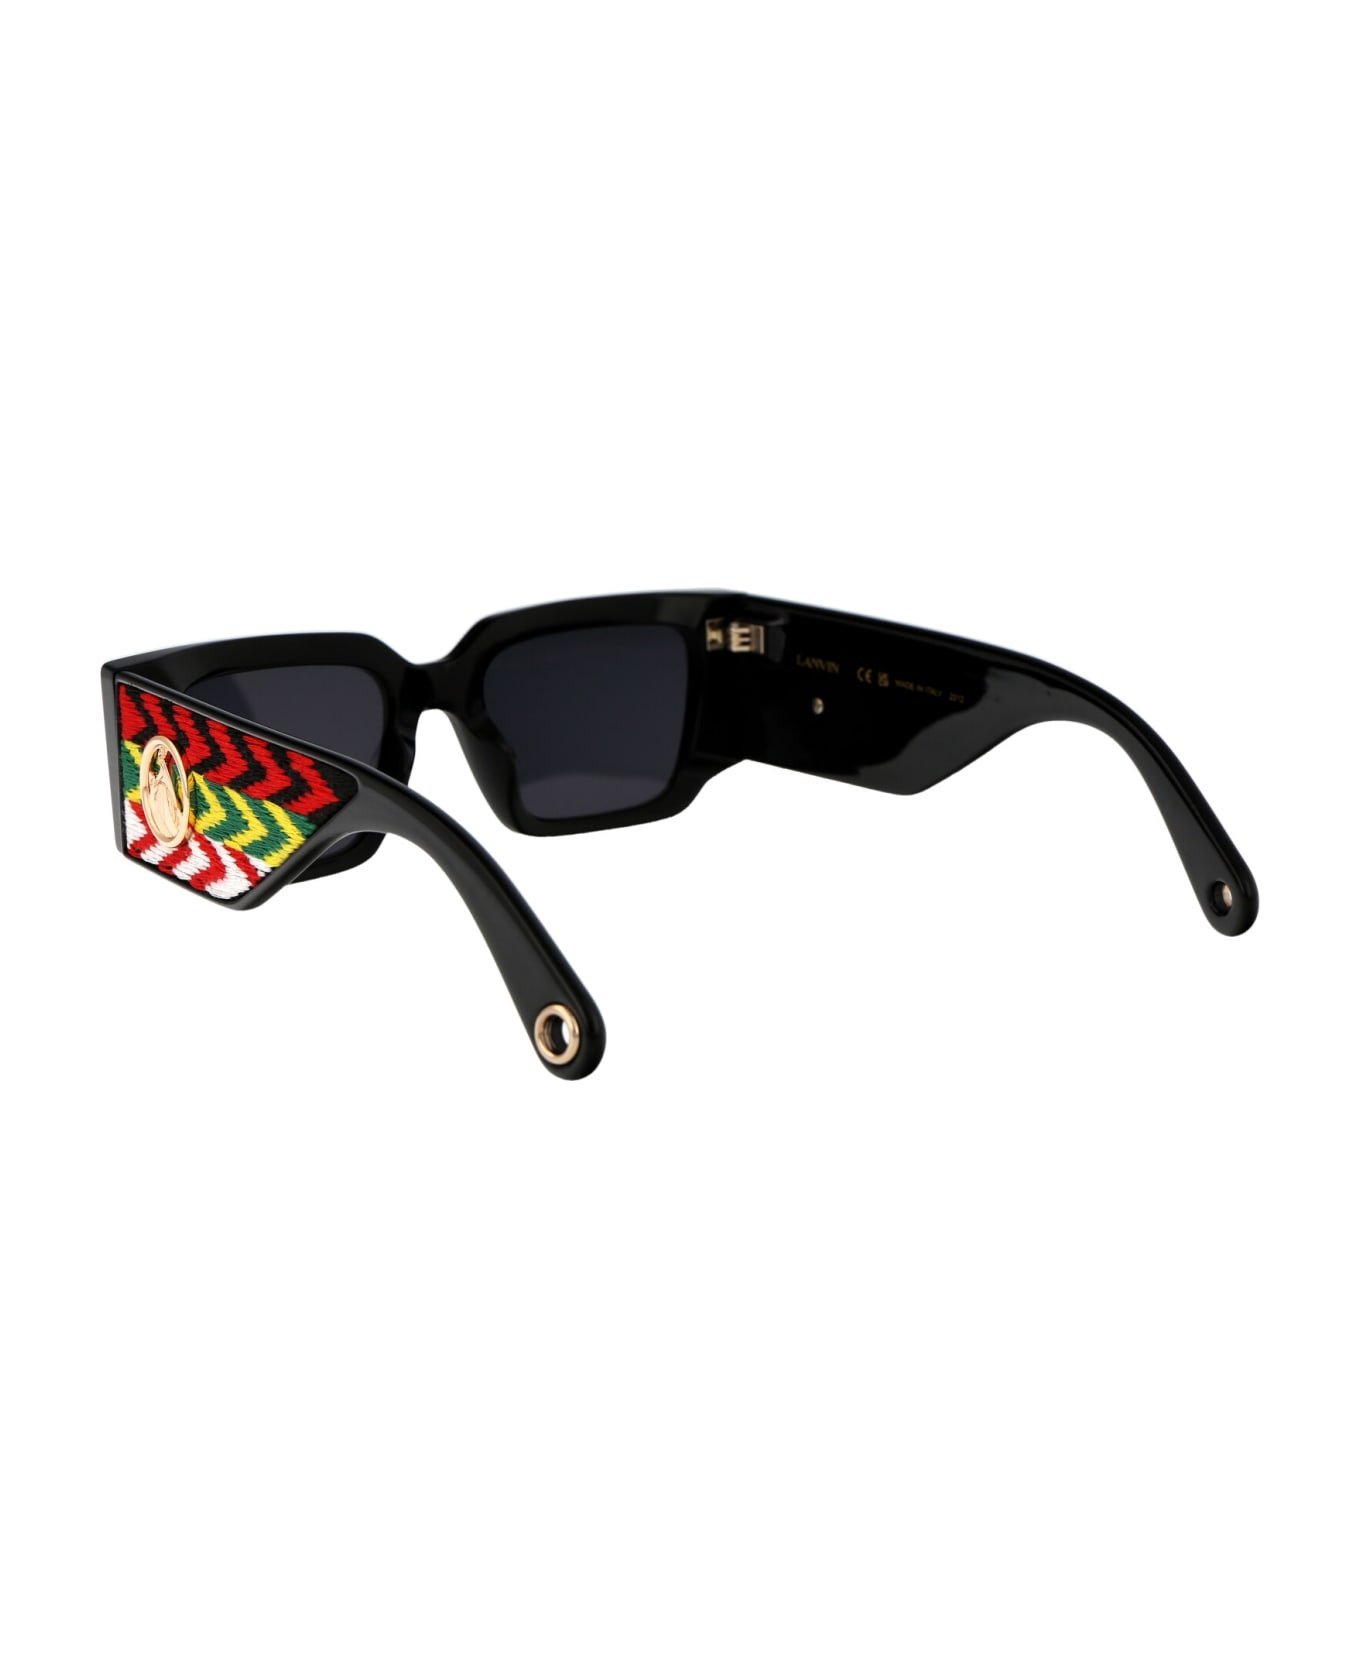 Lanvin Lnv639s Sunglasses - 001 BLACK